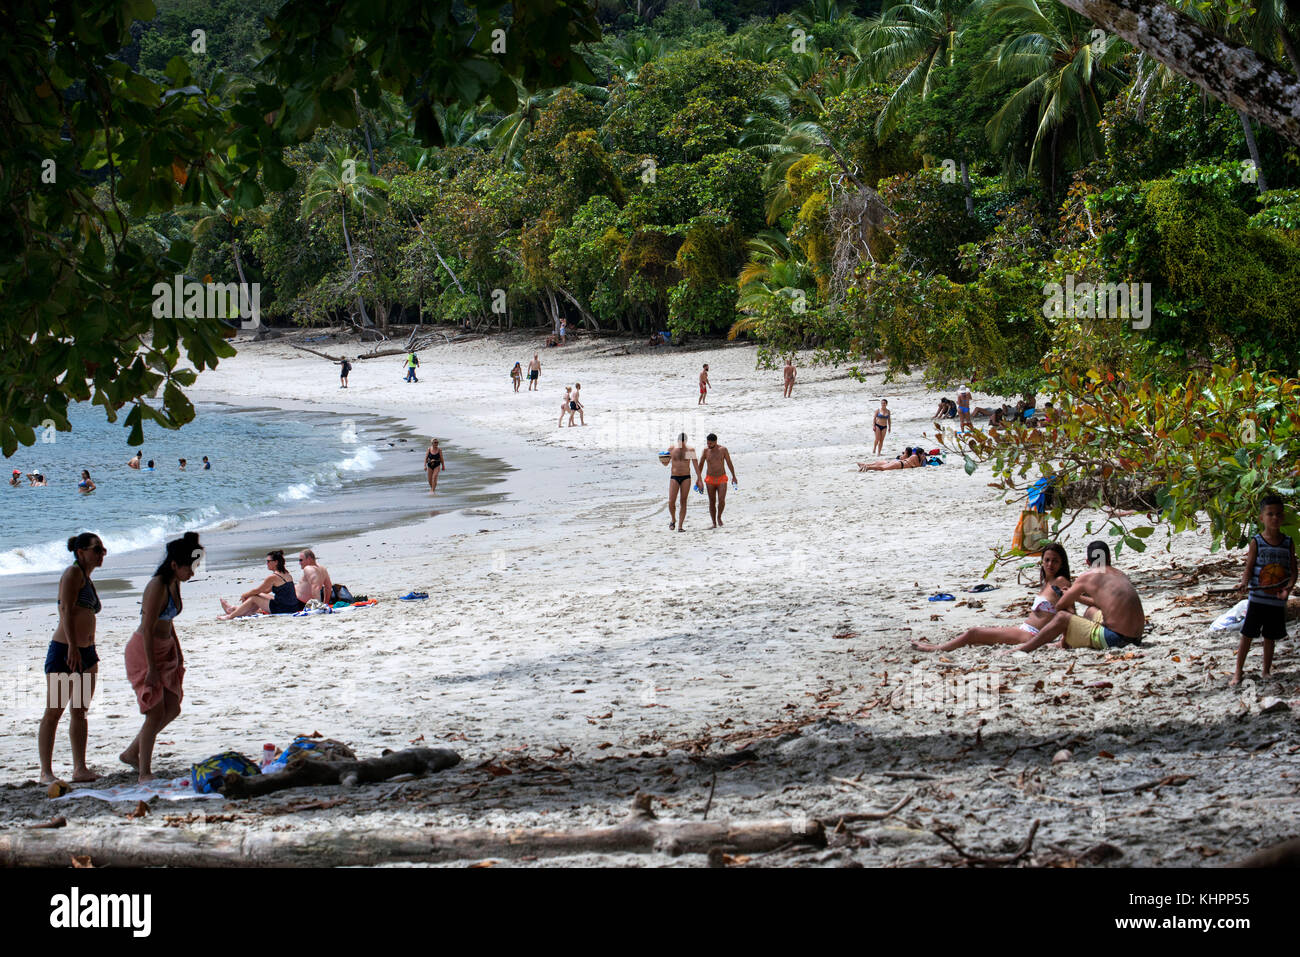 Plage de sable blanc du Parc National Manuel Antonio Puntarenas Costa Rica. Tropical Beach et bay avec la floraison des arbres de la forêt tropicale et les gens sur bea Banque D'Images